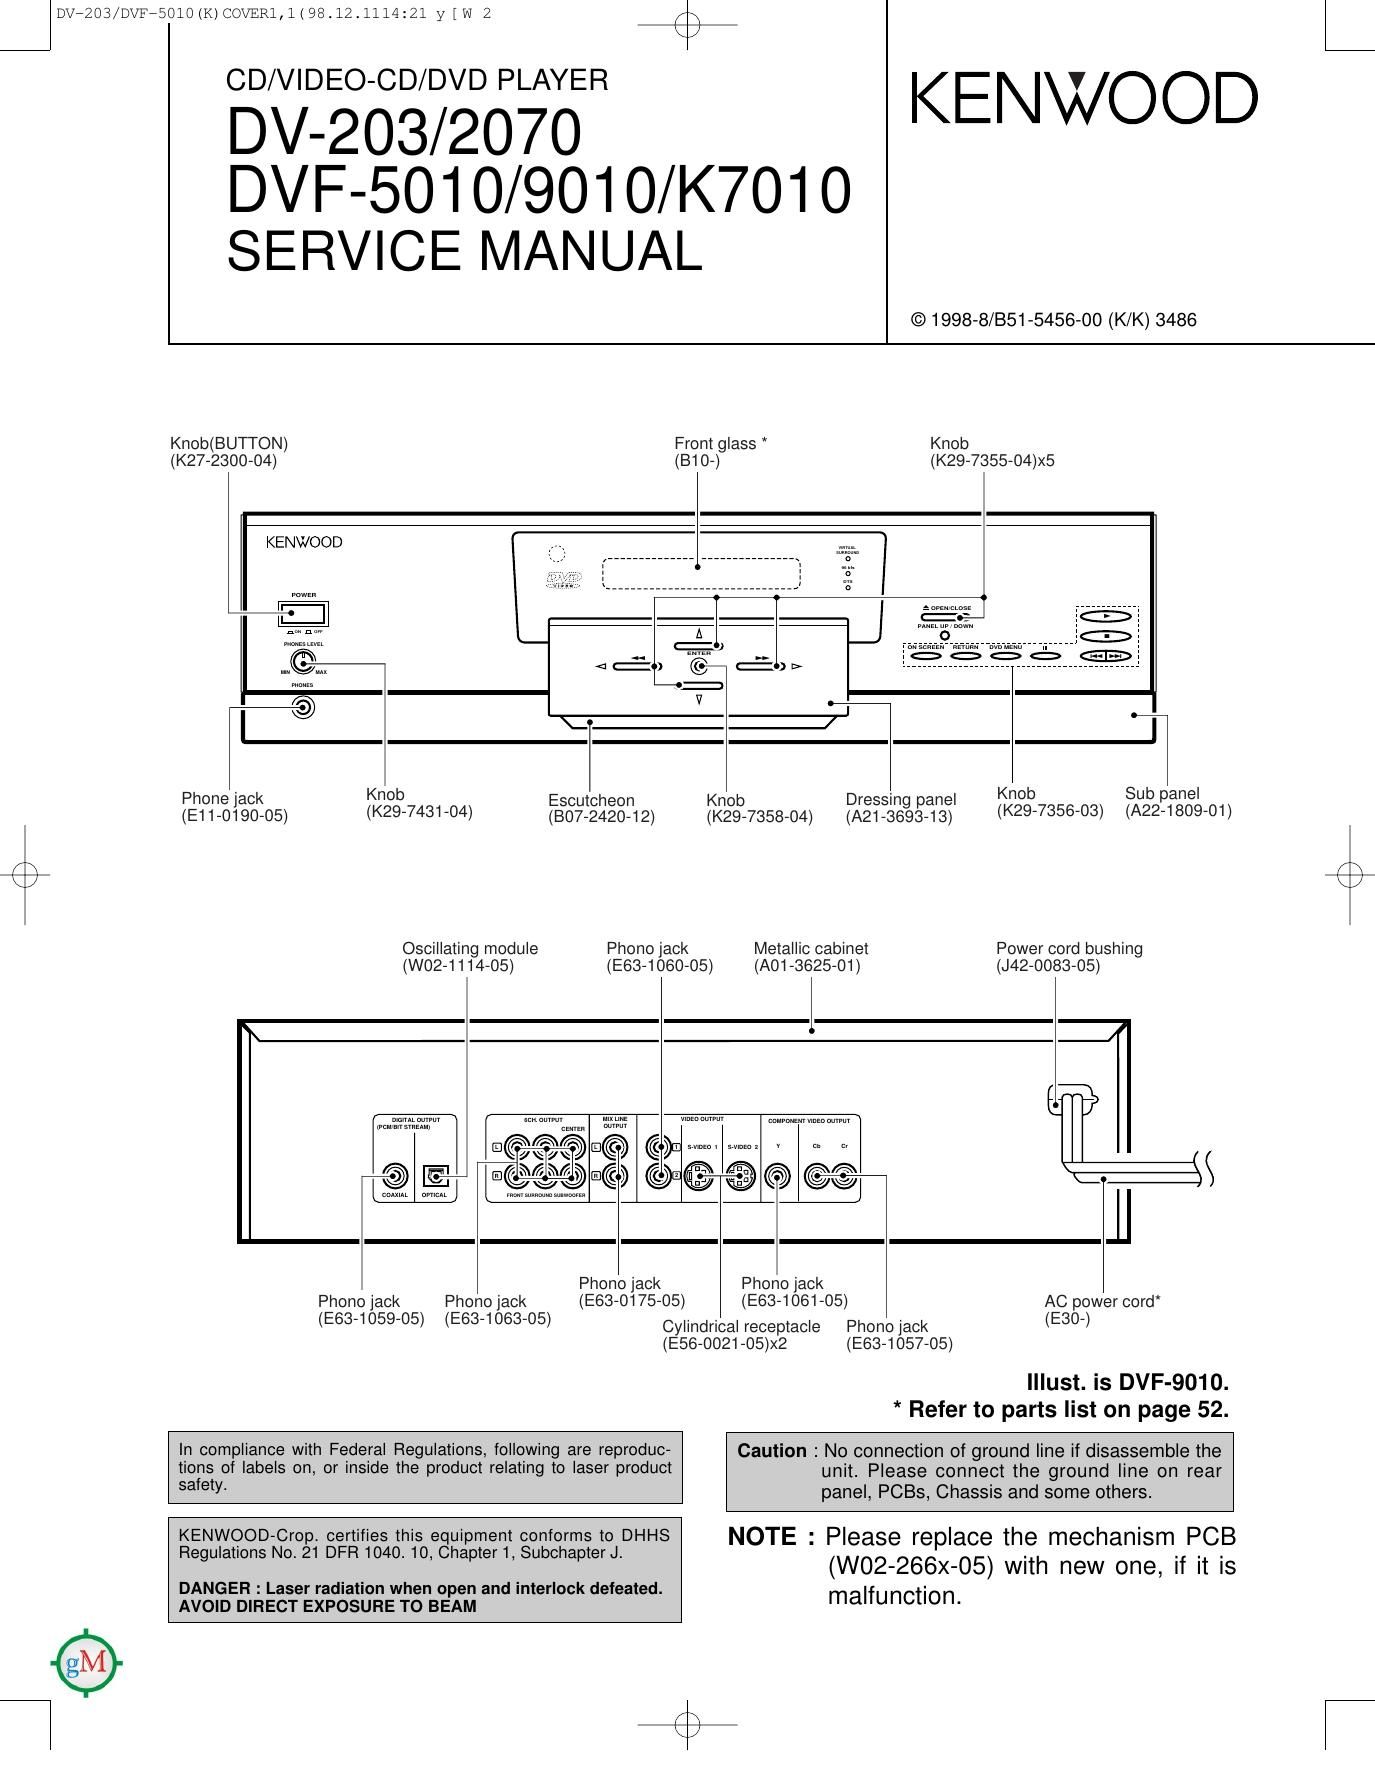 Kenwood DVFK 7010 Service Manual